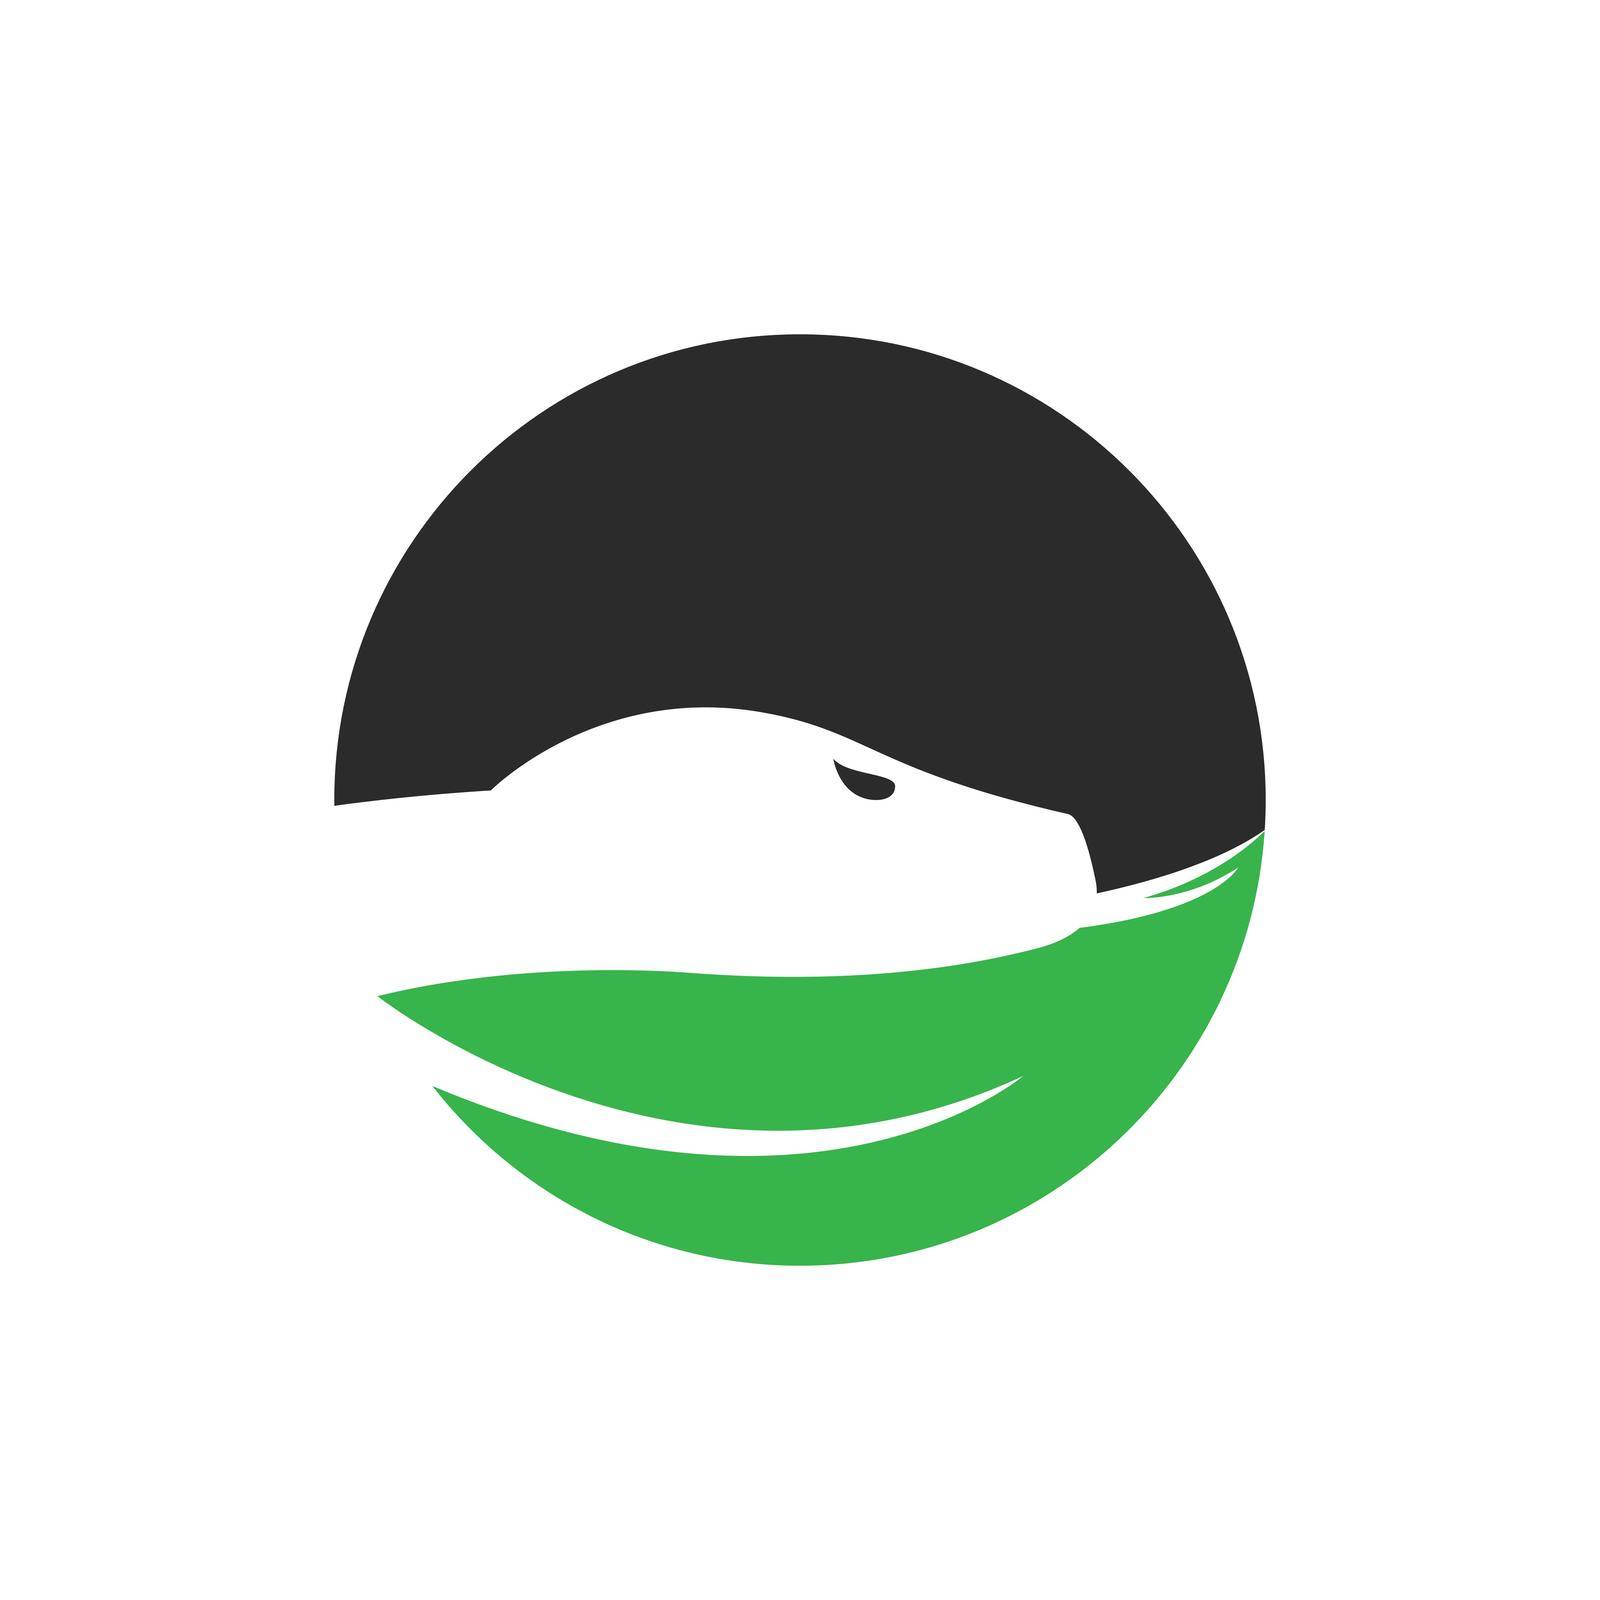 Snake logo,Pharmacy logo vector ilustration template